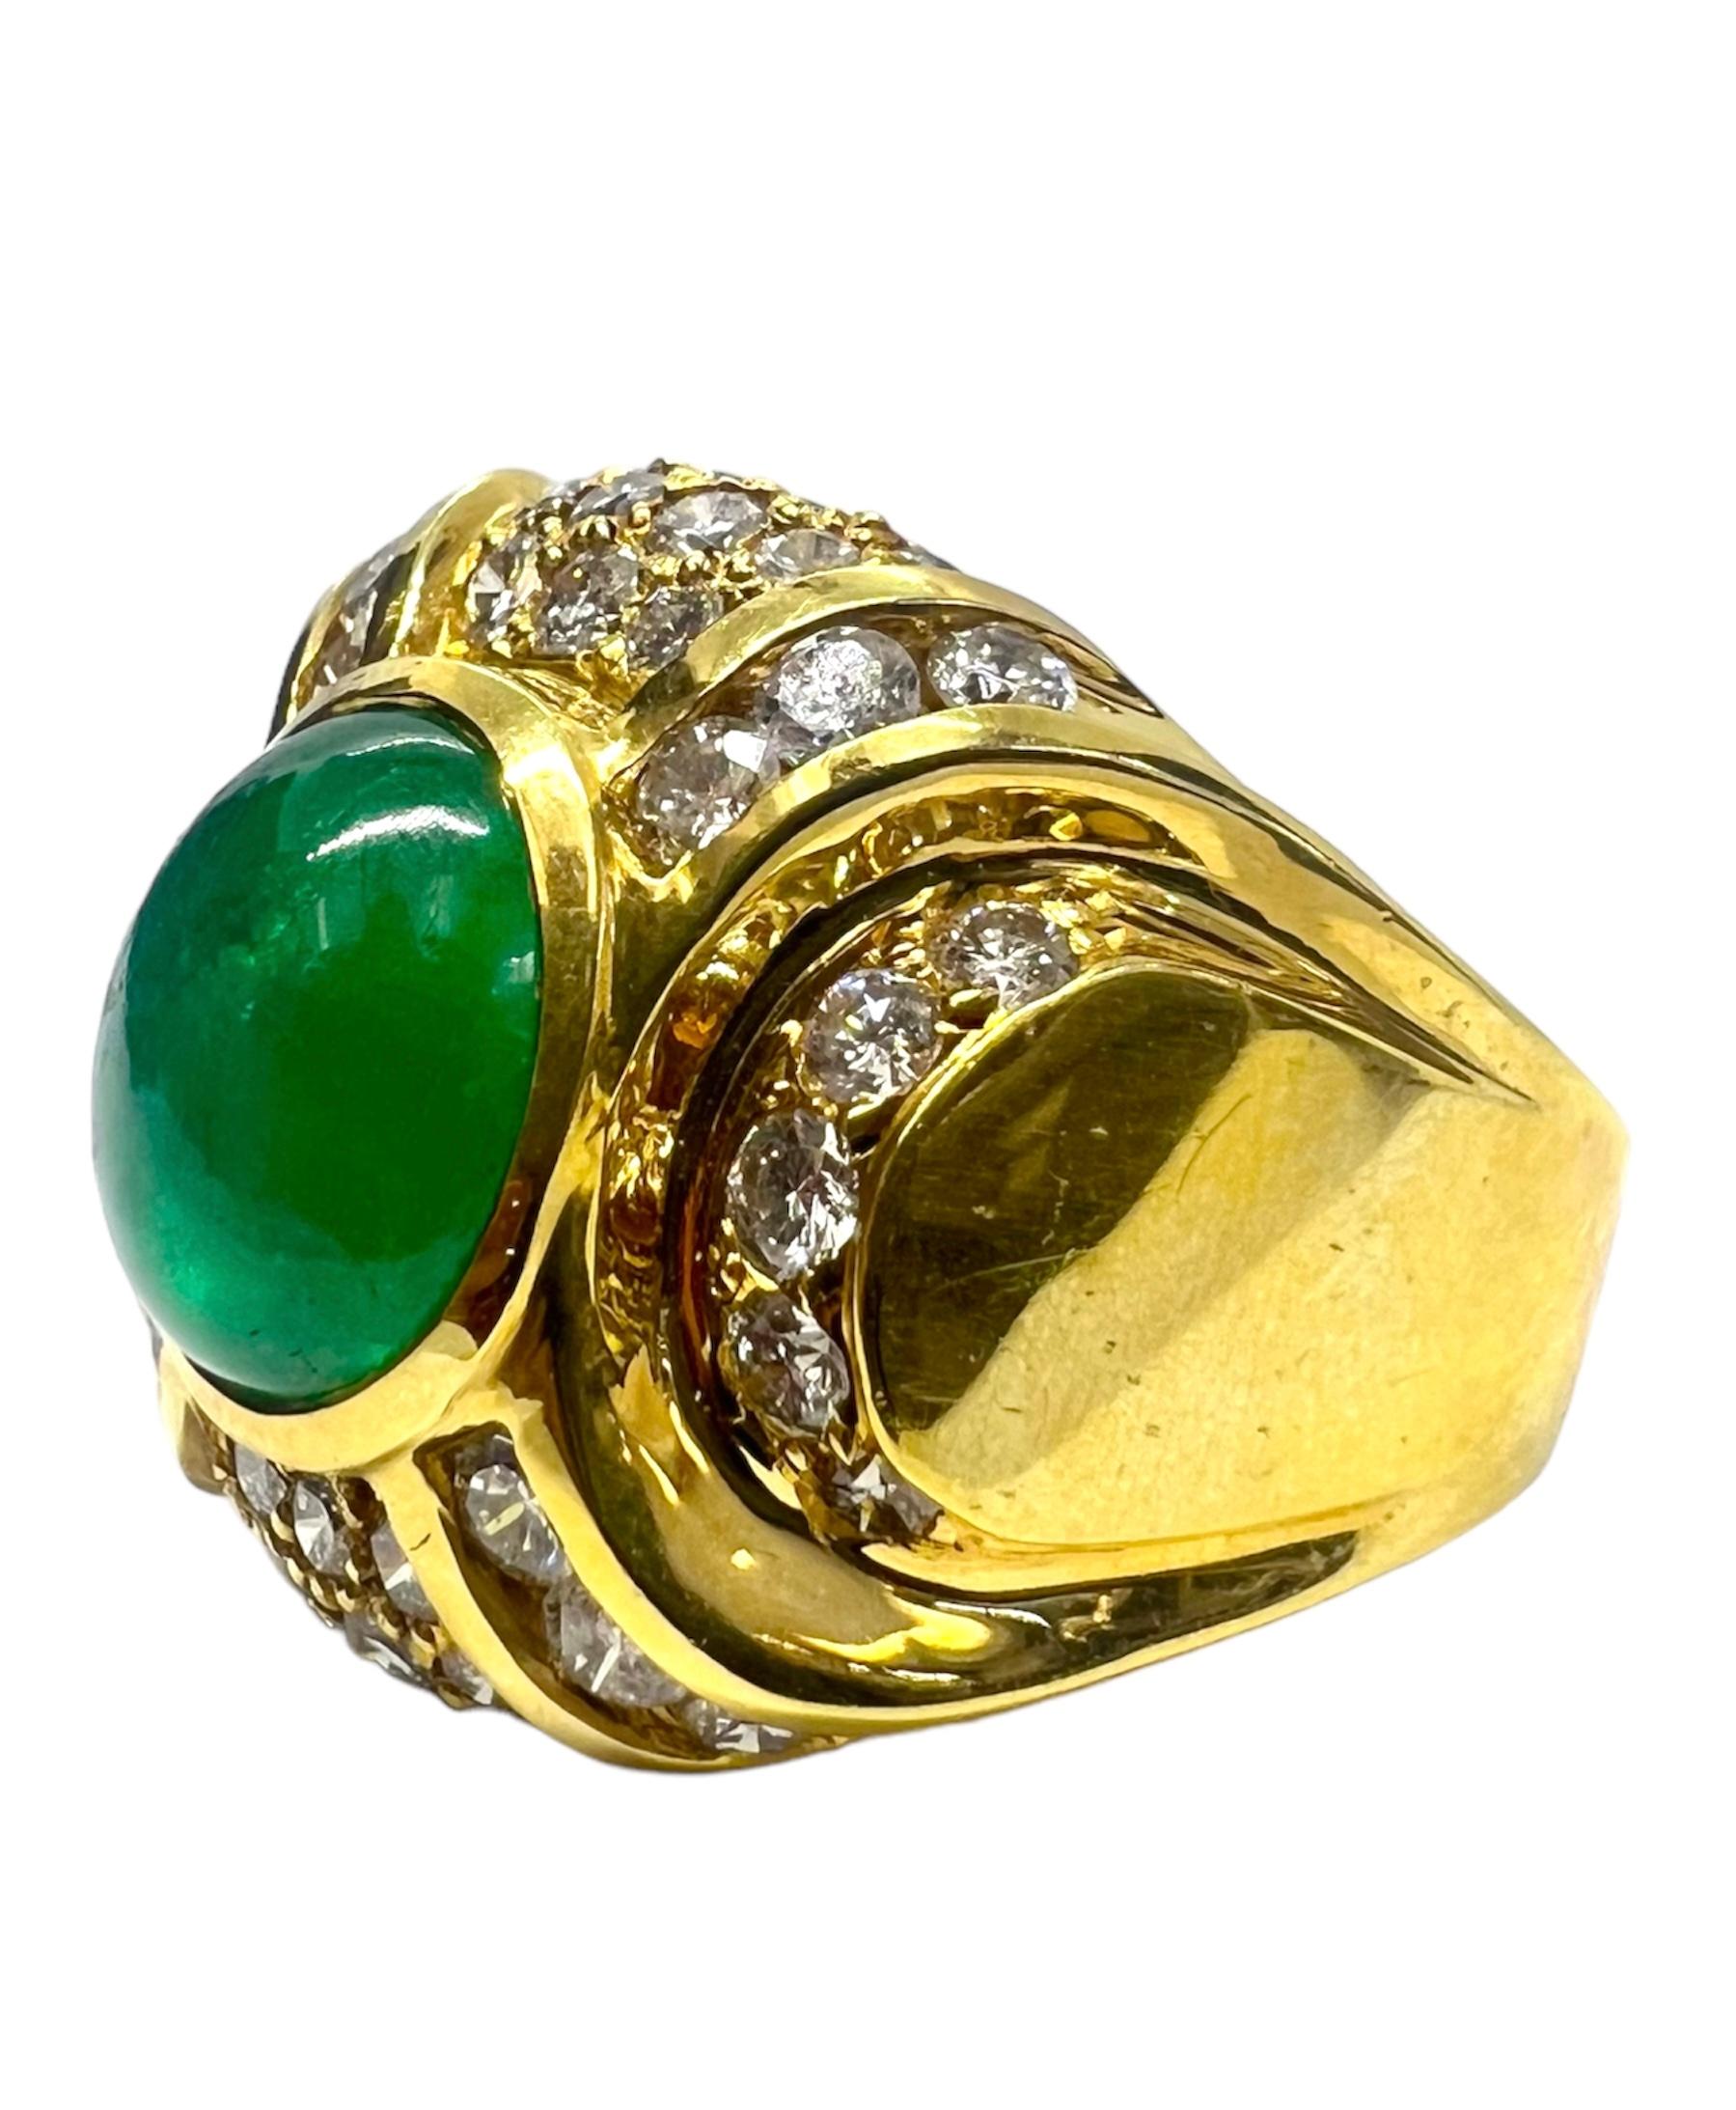 Ring aus 18 Karat Gelbgold mit einem Cabochon-Smaragd in der Mitte, der mit Diamanten verziert ist.

Sophia D von Joseph Dardashti LTD ist seit 35 Jahren weltweit bekannt und lässt sich vom klassischen Art-Déco-Design inspirieren, das mit modernen